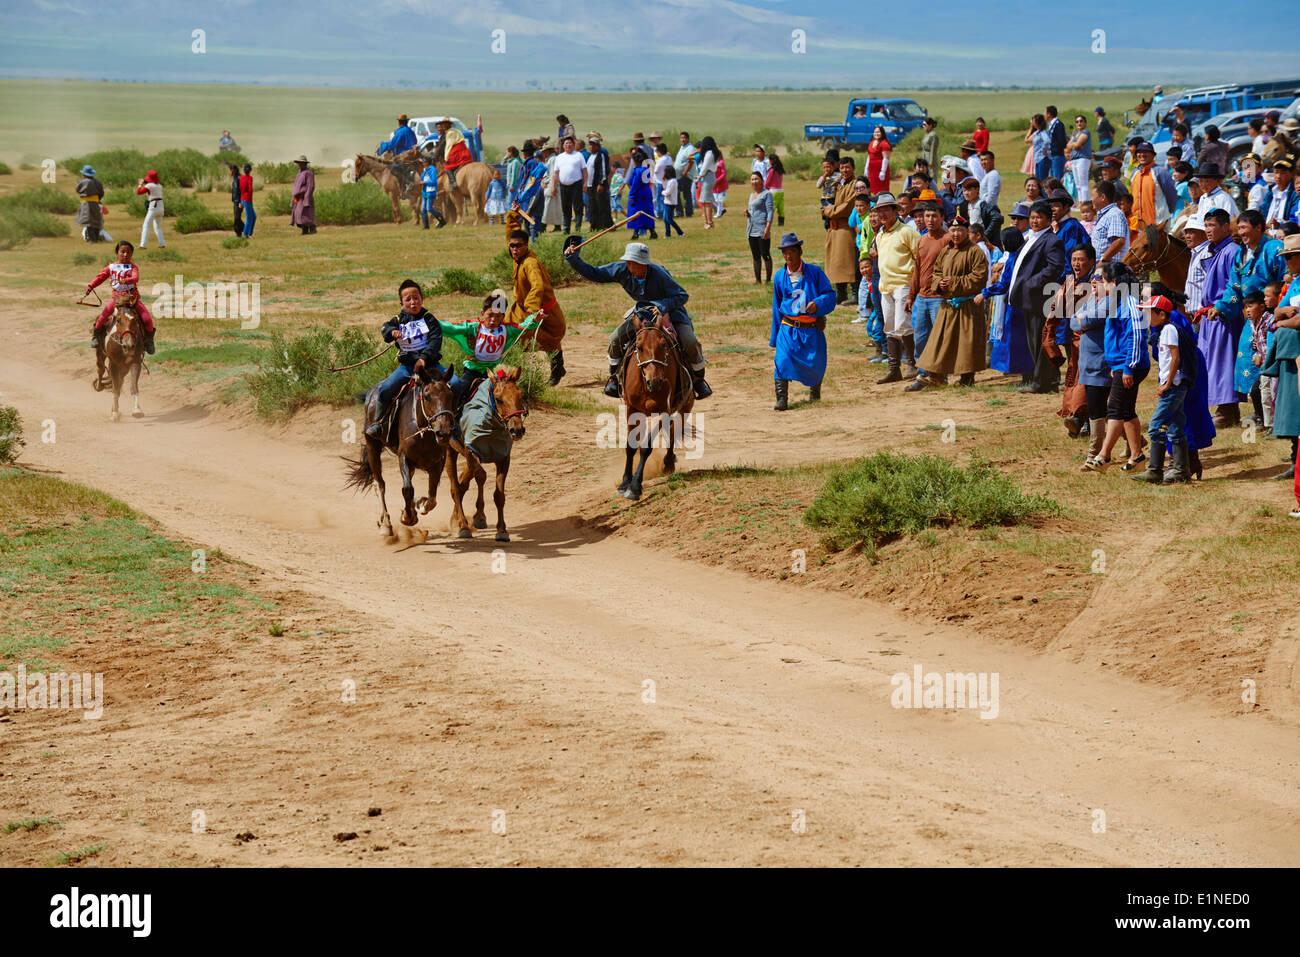 La Mongolie, province, Ondorshireet Övörkhangaï, le festival Naadam, chevaux de race, spectateur Banque D'Images